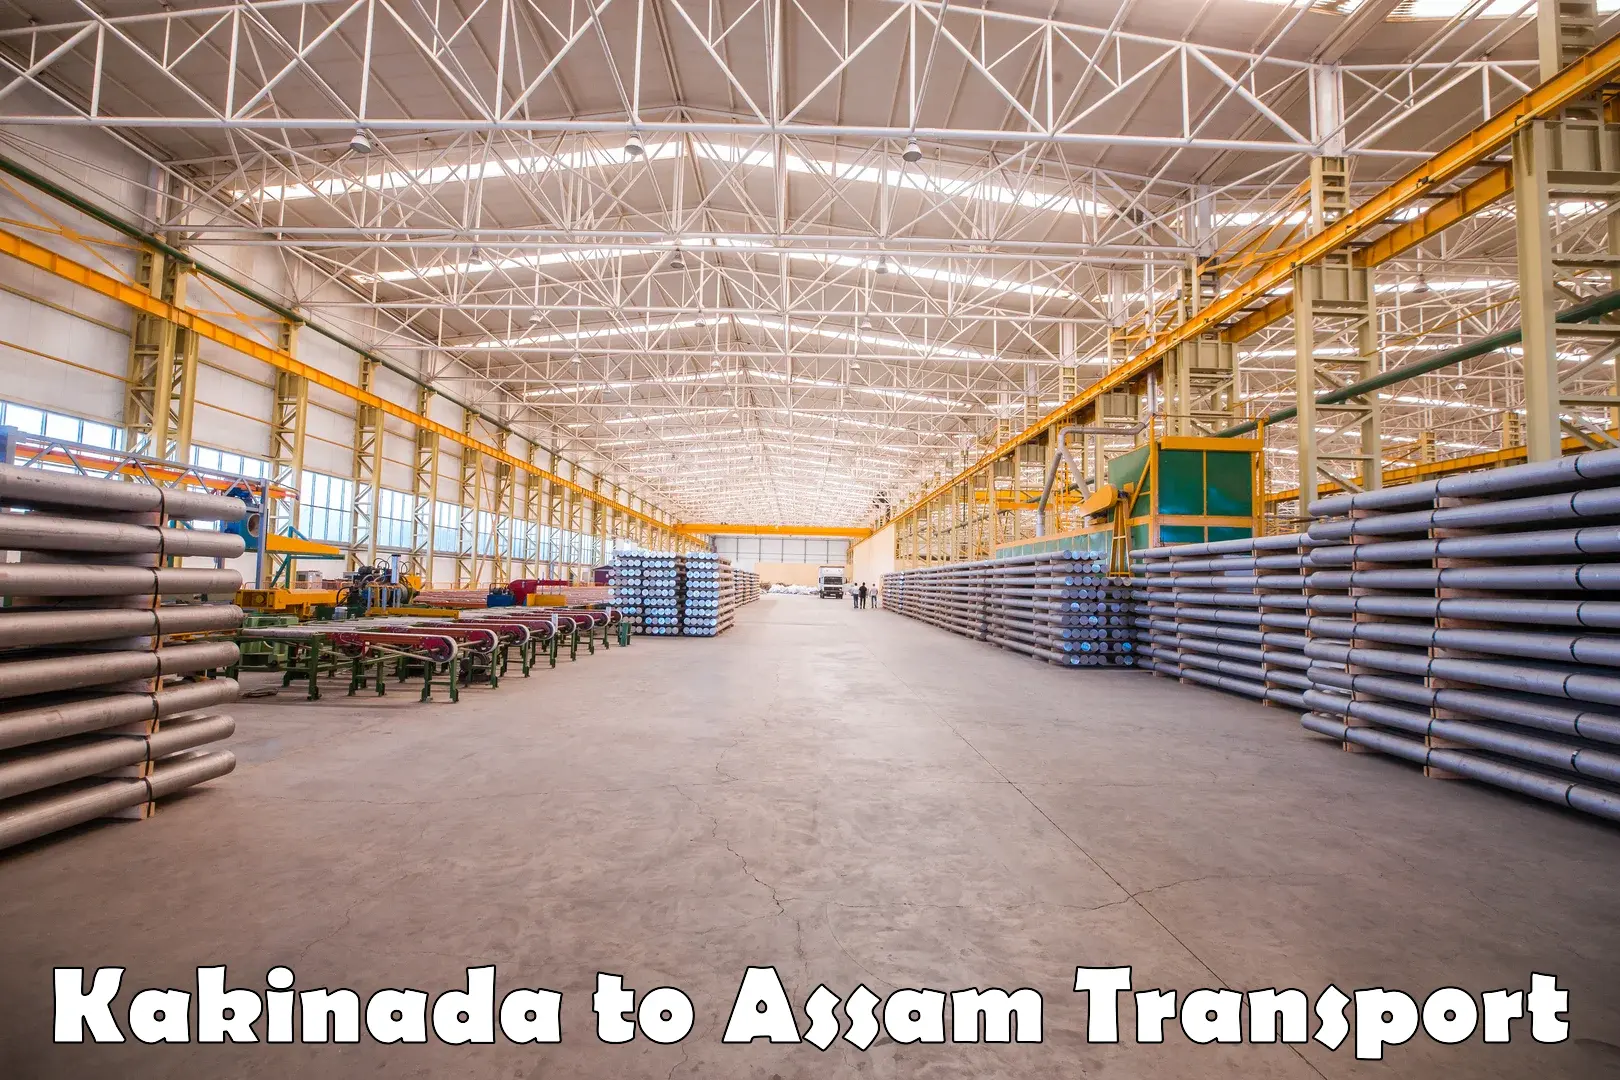 Nearest transport service in Kakinada to Assam